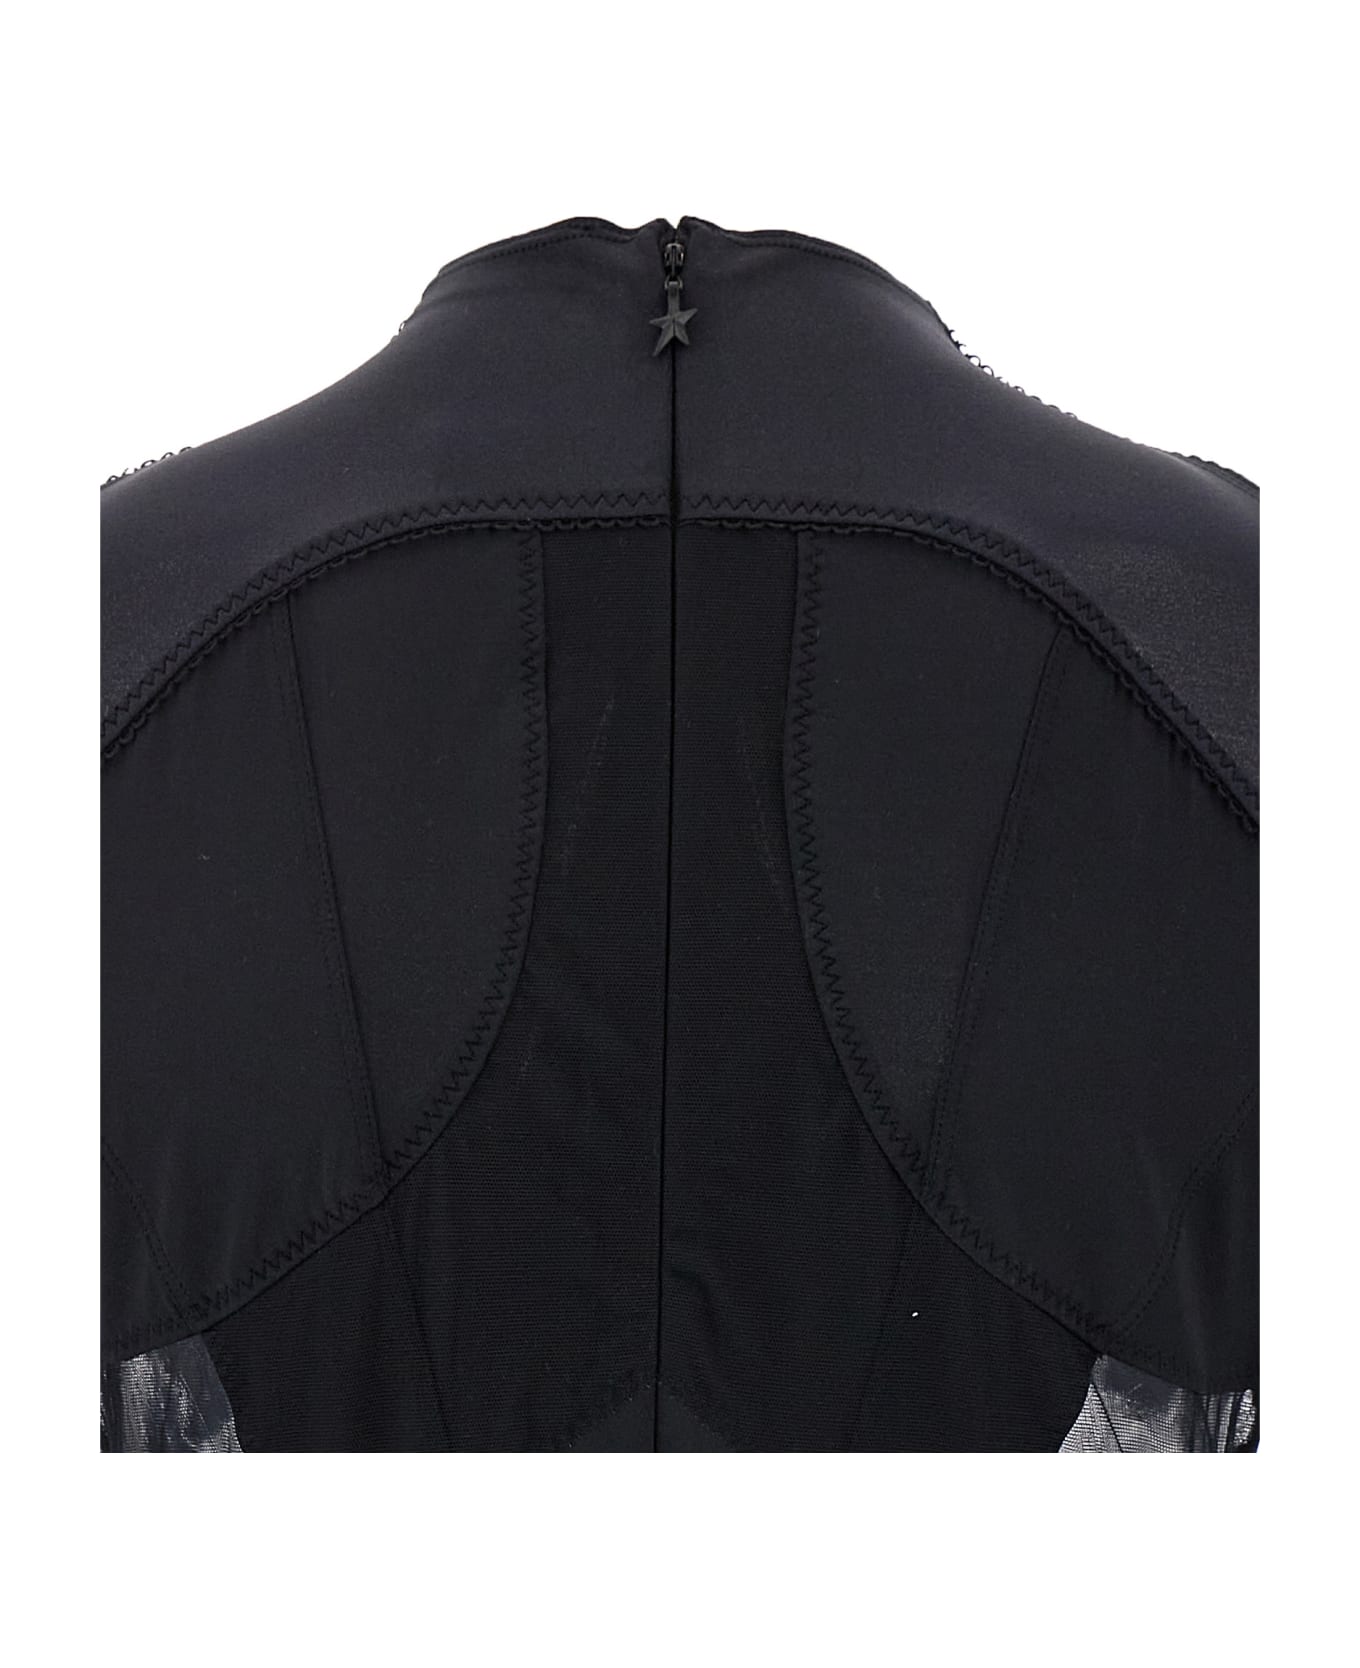 Mugler 'multi-layer Lingerie' Bodysuit - Black  